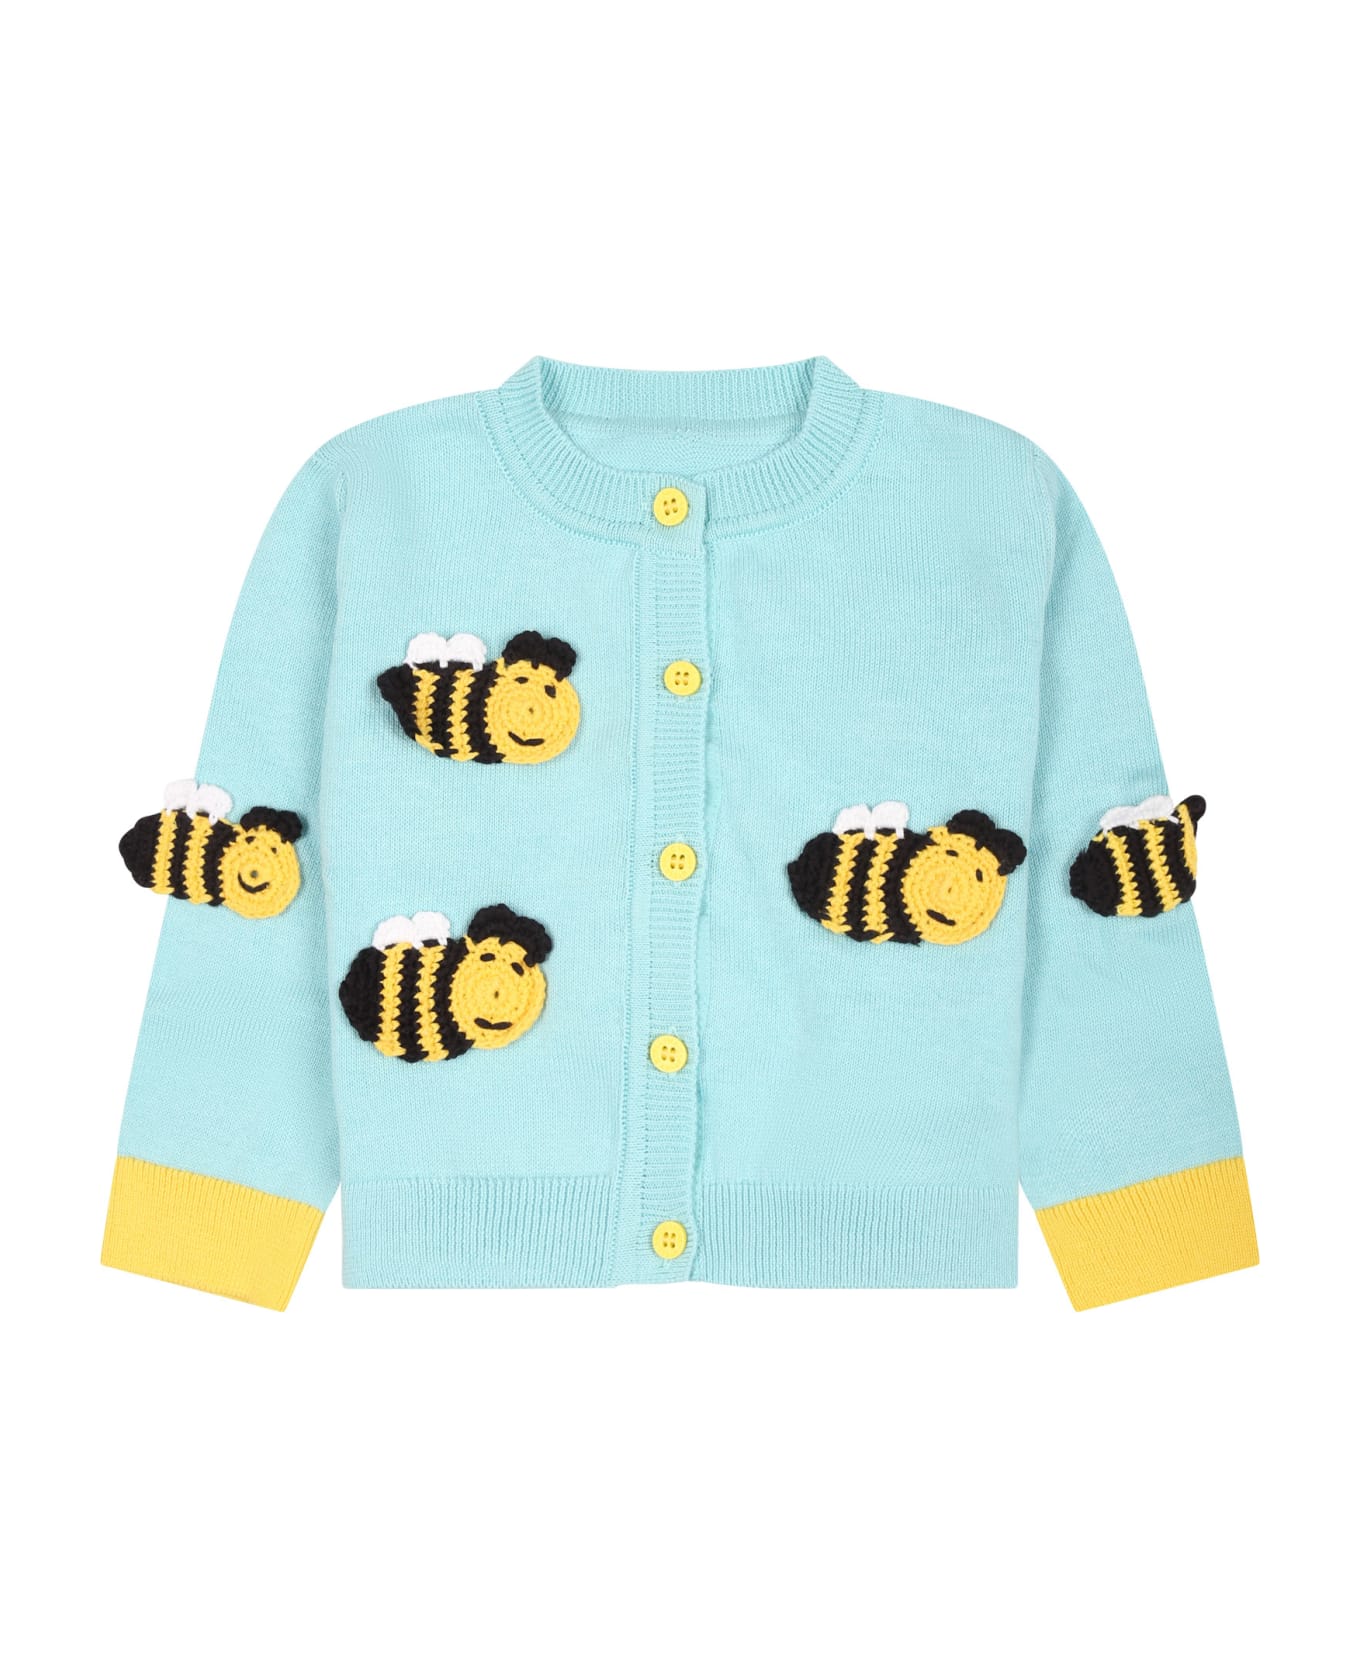 Stella McCartney Kids Light Blue Cardigan For Baby Girl With Bees - Celeste ニットウェア＆スウェットシャツ